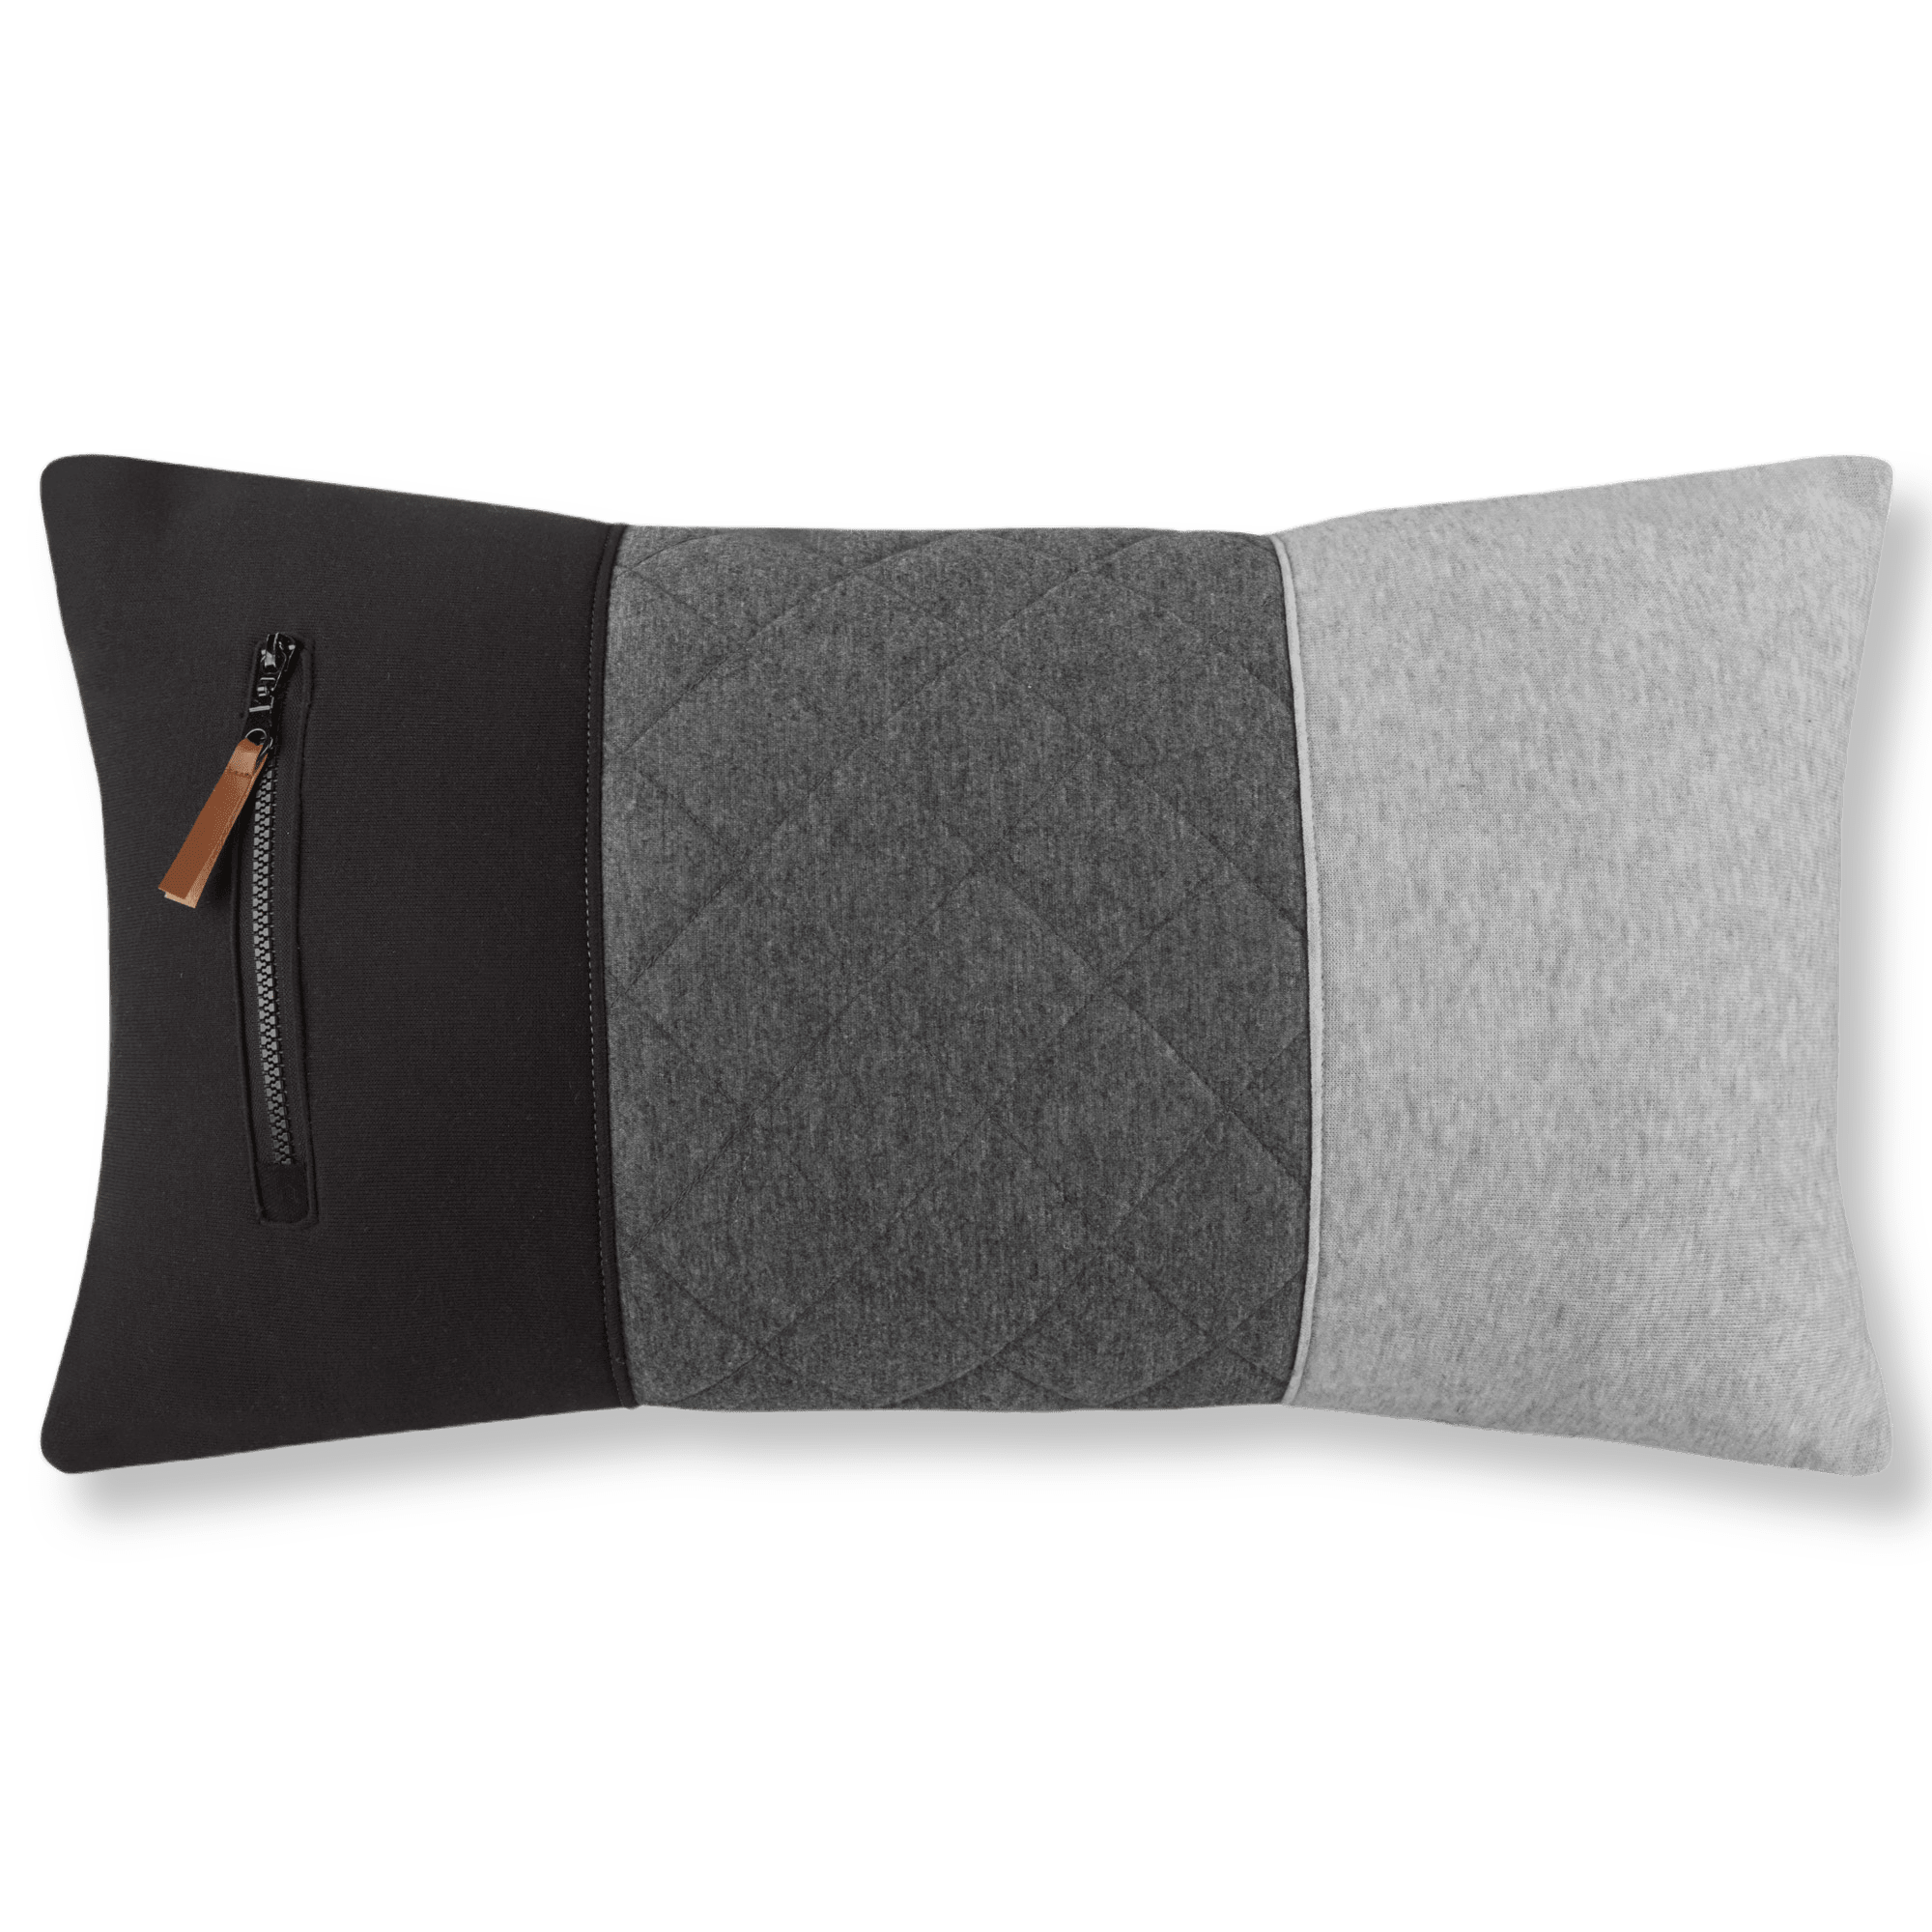 Vidal Quilted Colour Block Lumbar Throw Pillow 